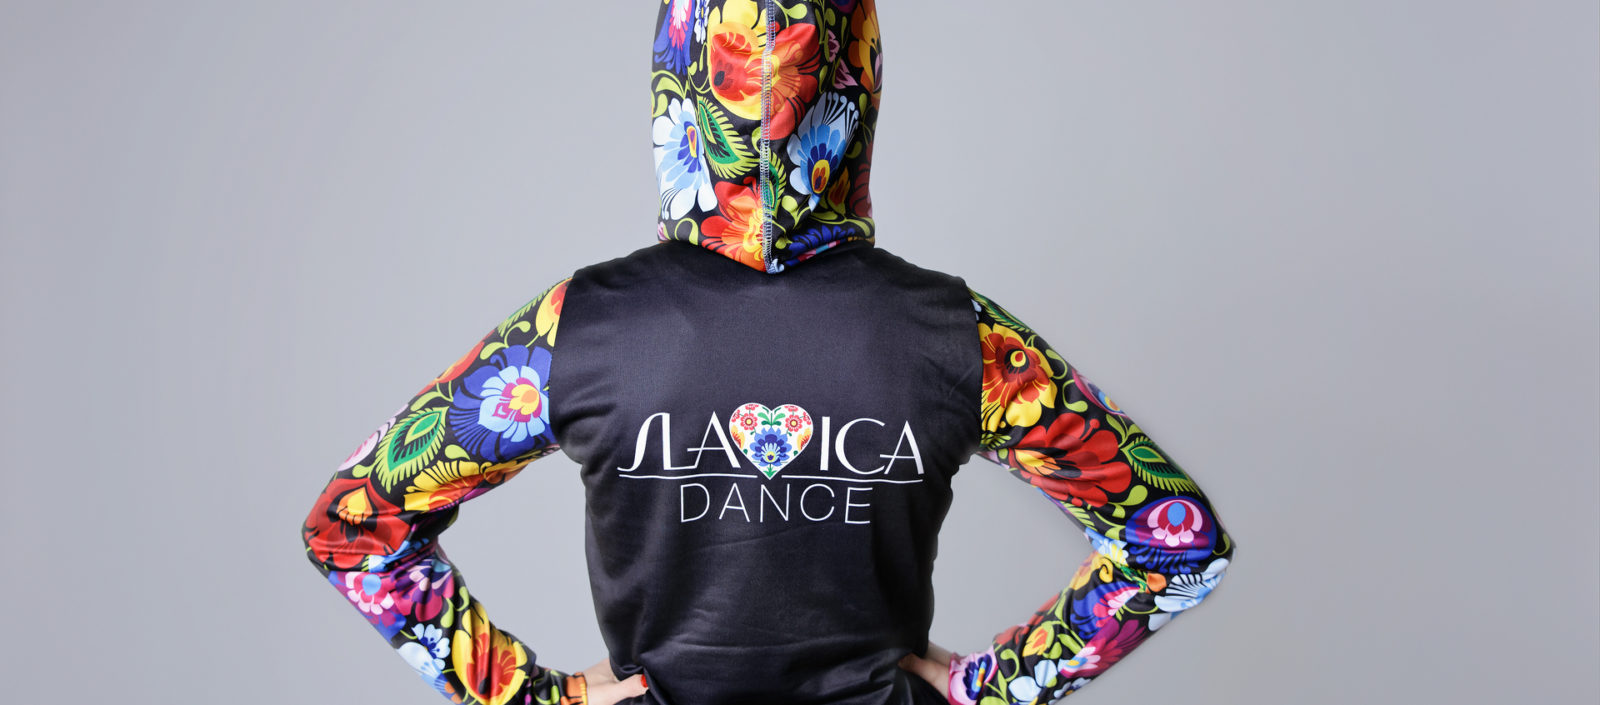 Slavica Dance – tradycja w nowoczesnym wydaniu